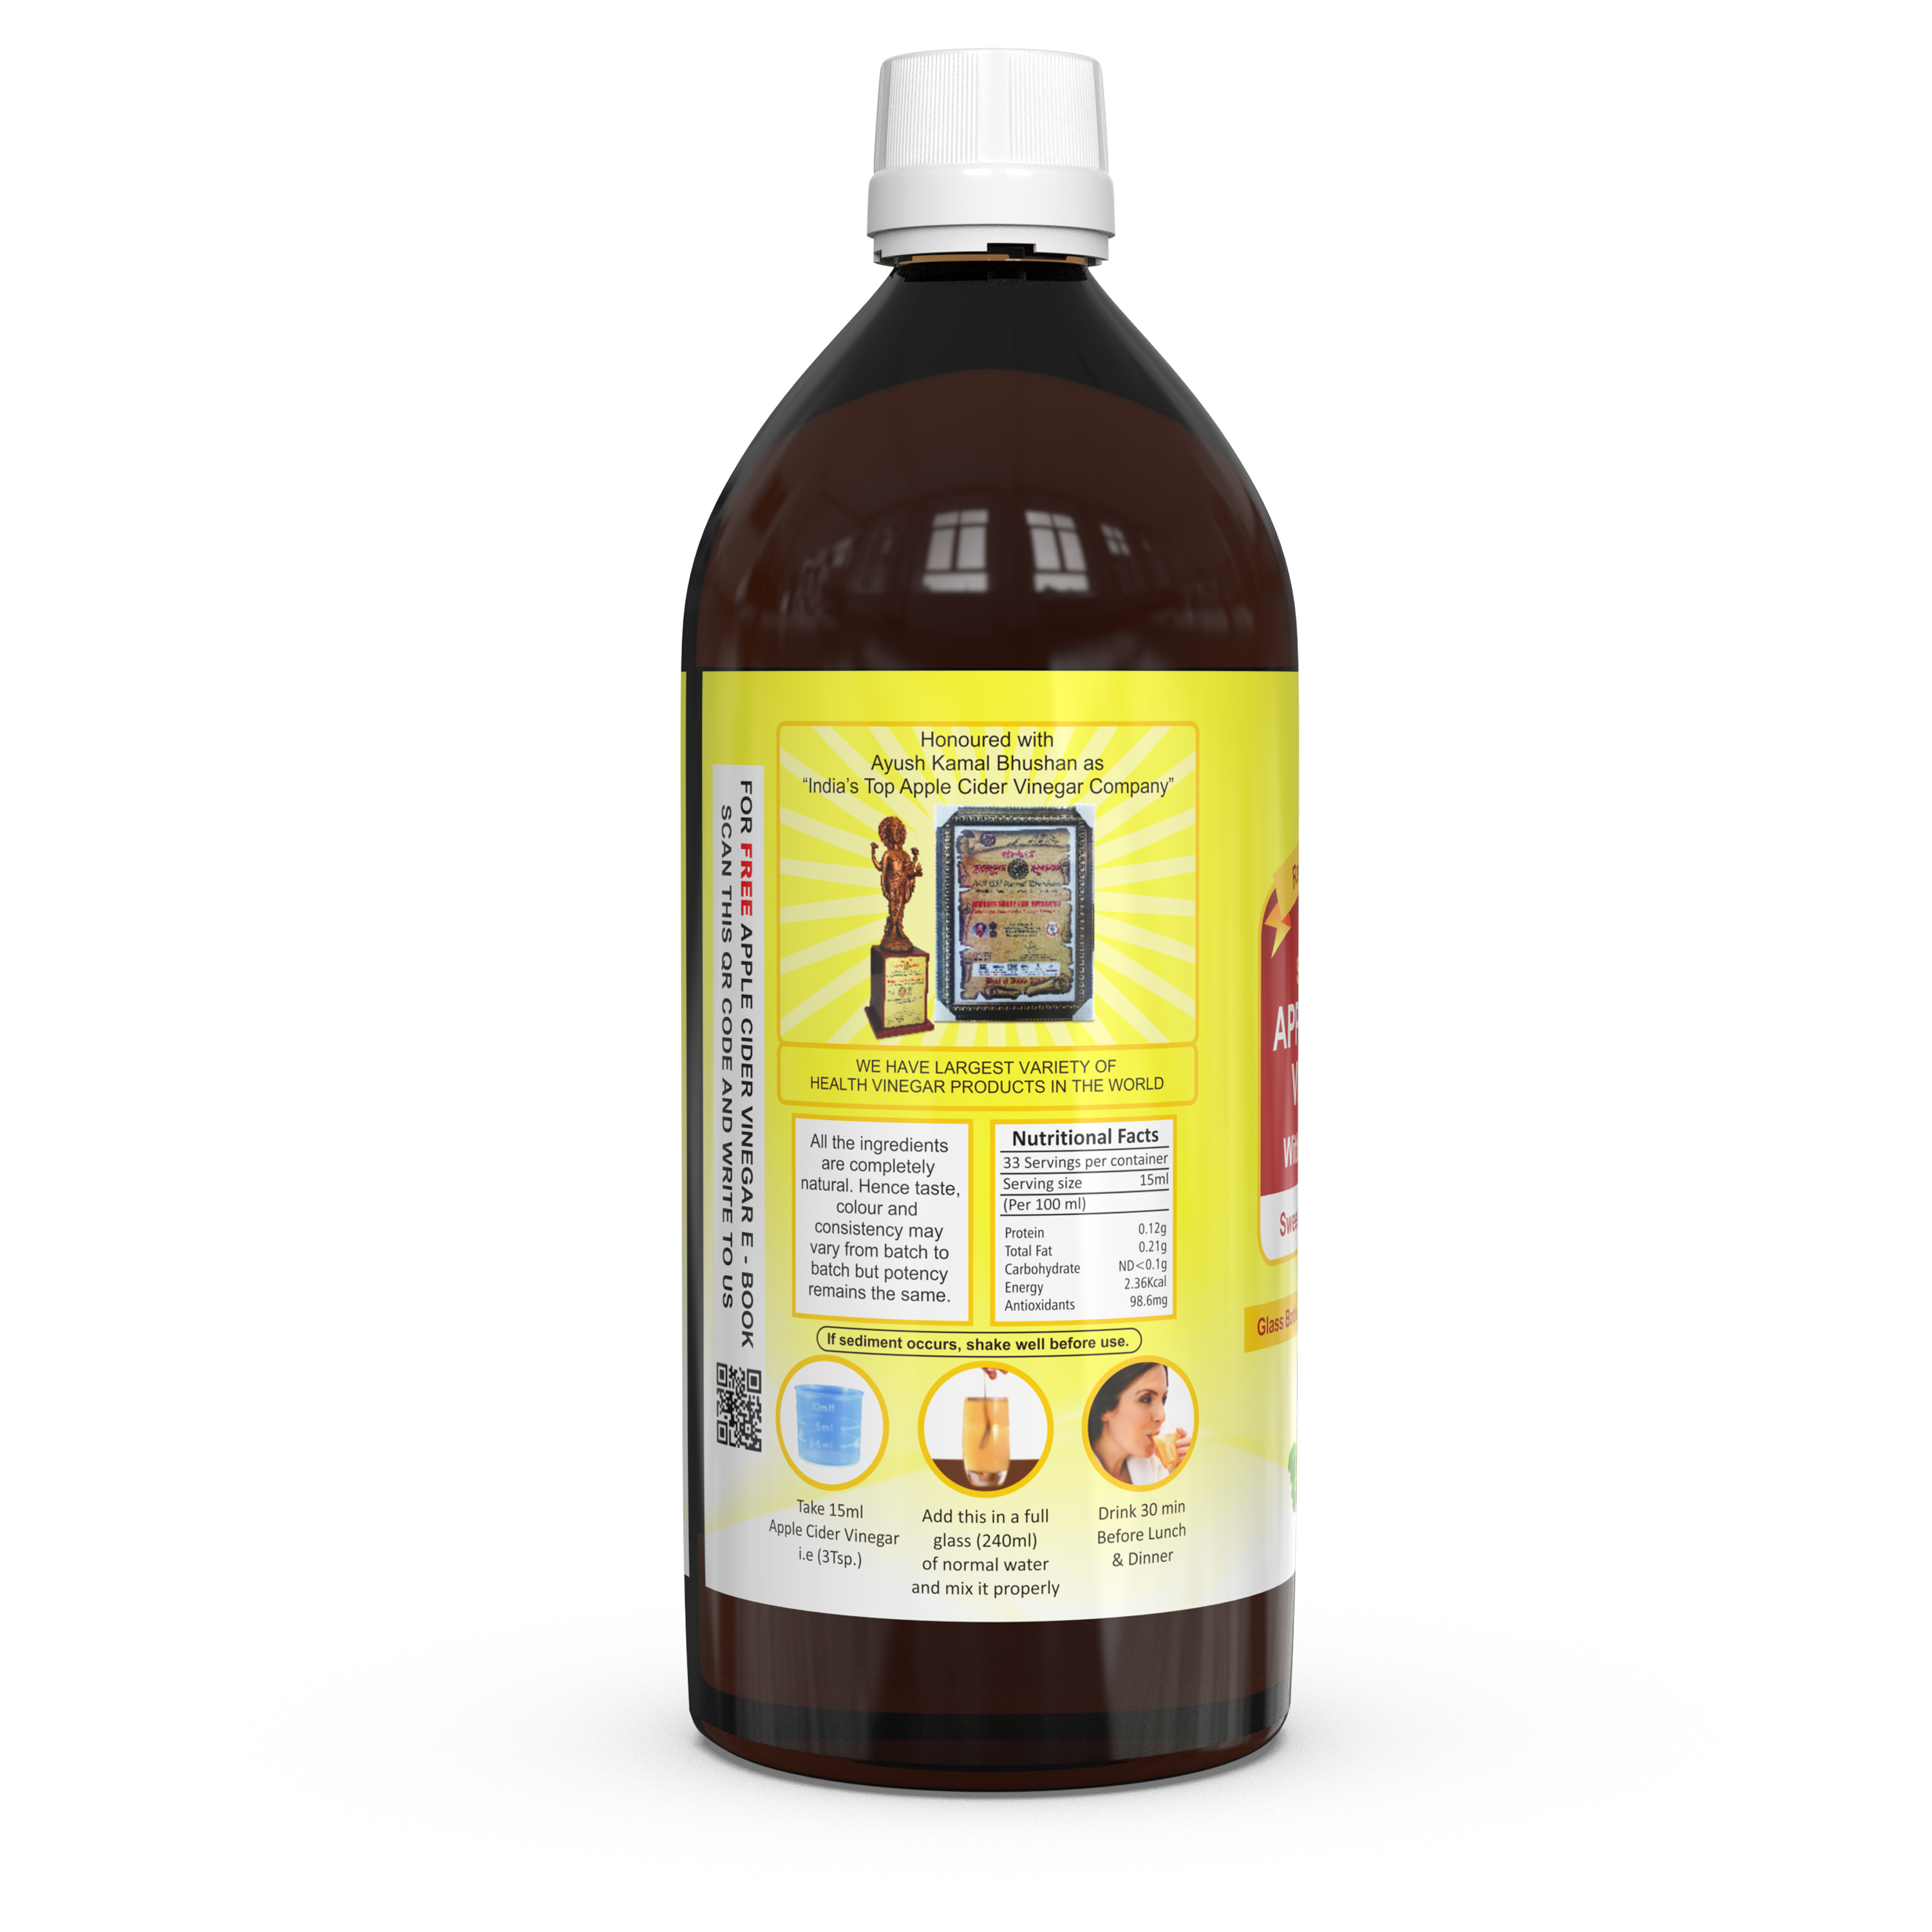 Buy Dr. Patkar's Apple Cider Vinegar with Stevia at Best Price Online